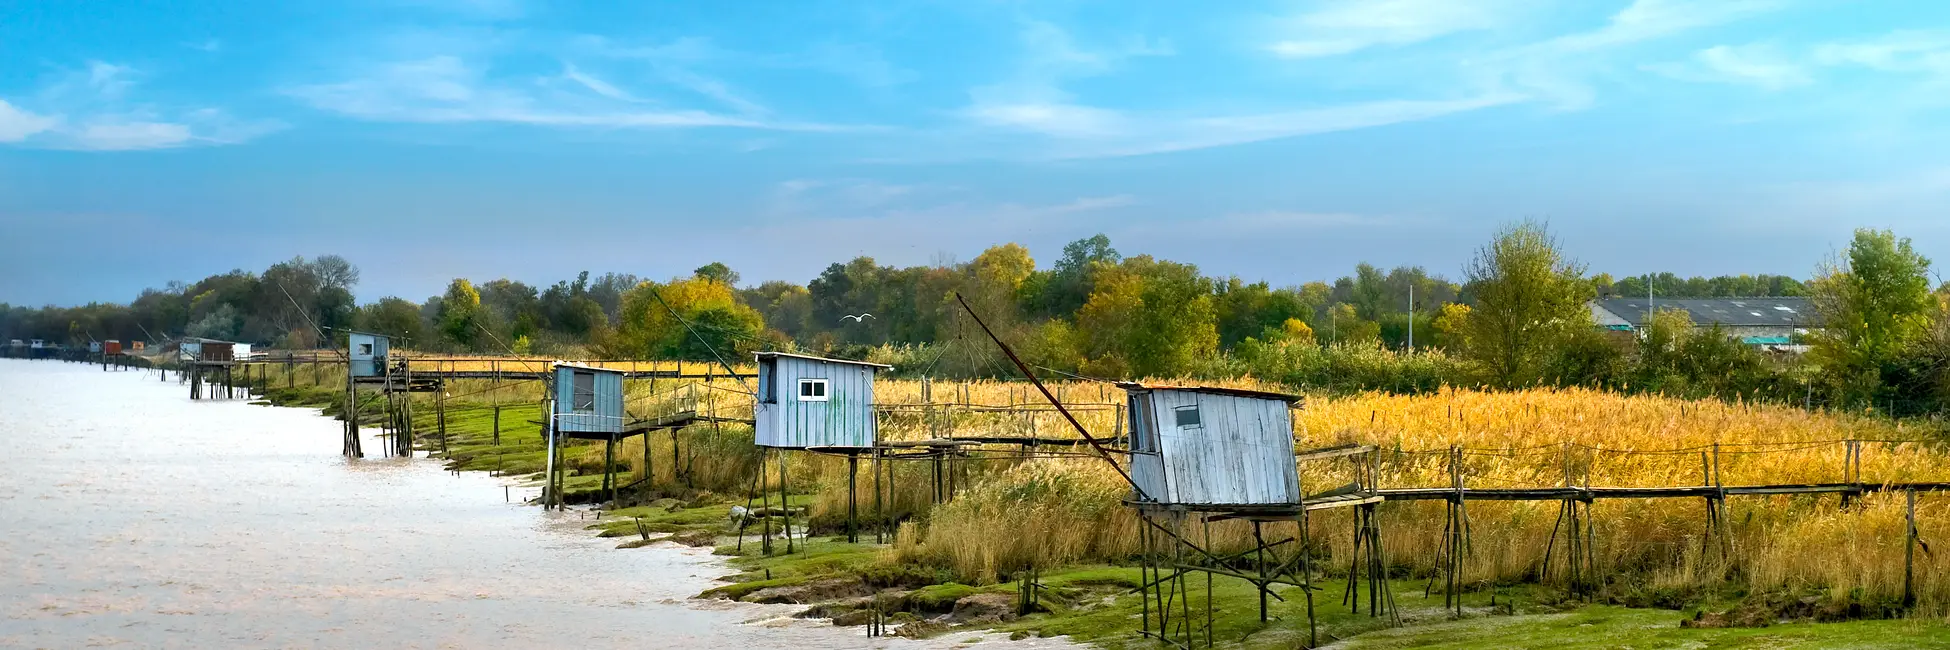 Les petites cabanes de pêcheurs sur l'Estuaire de Gironde 